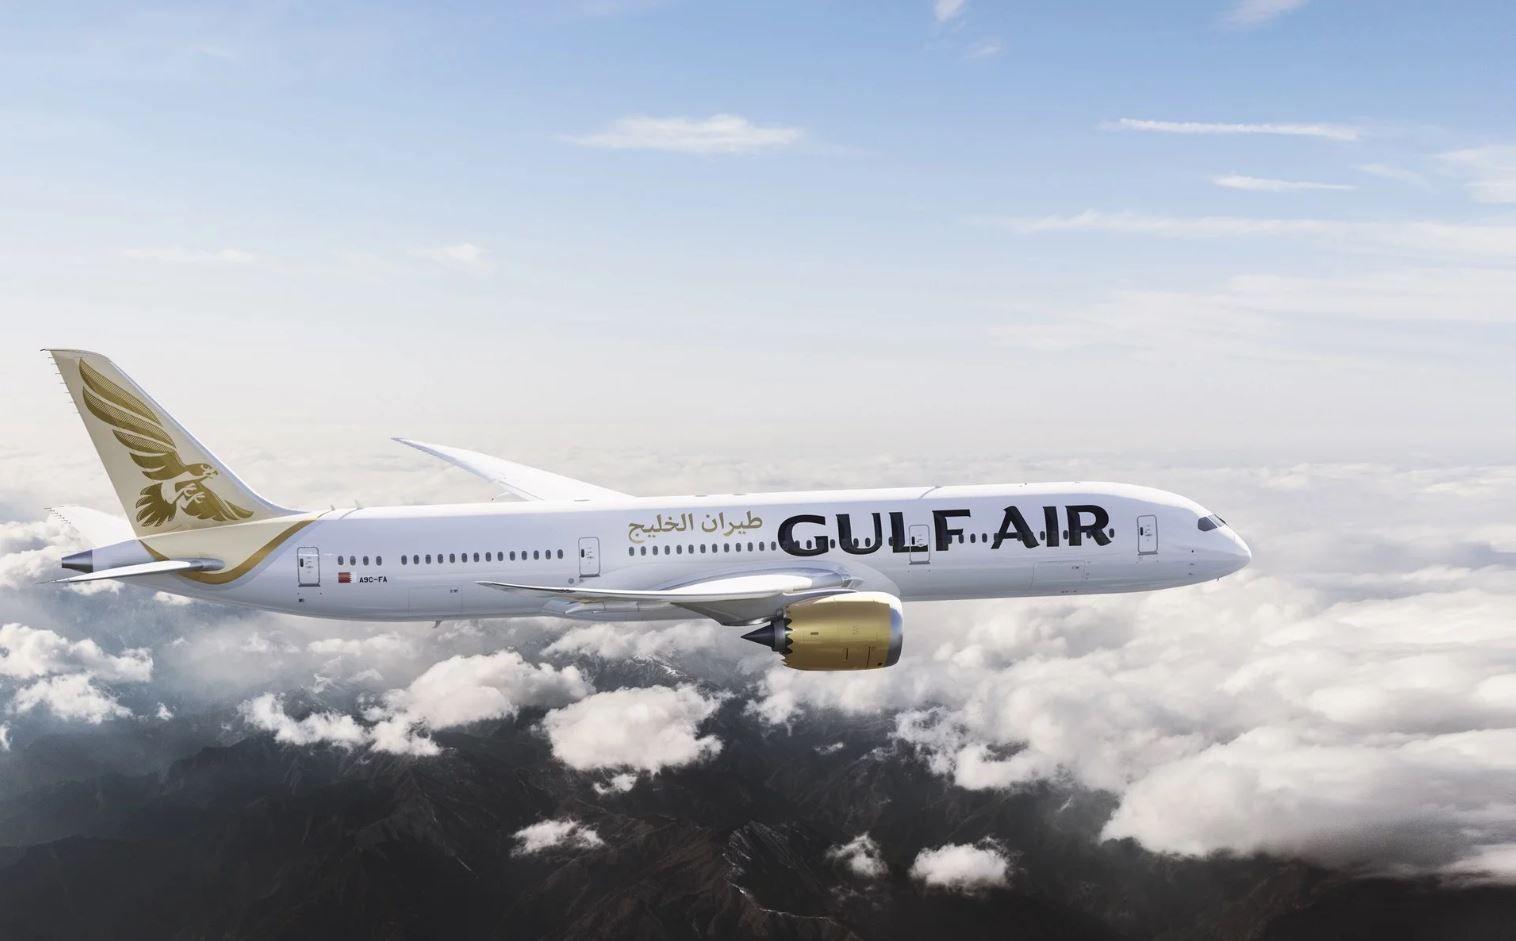 Gulf Air Logo - Gulf Air